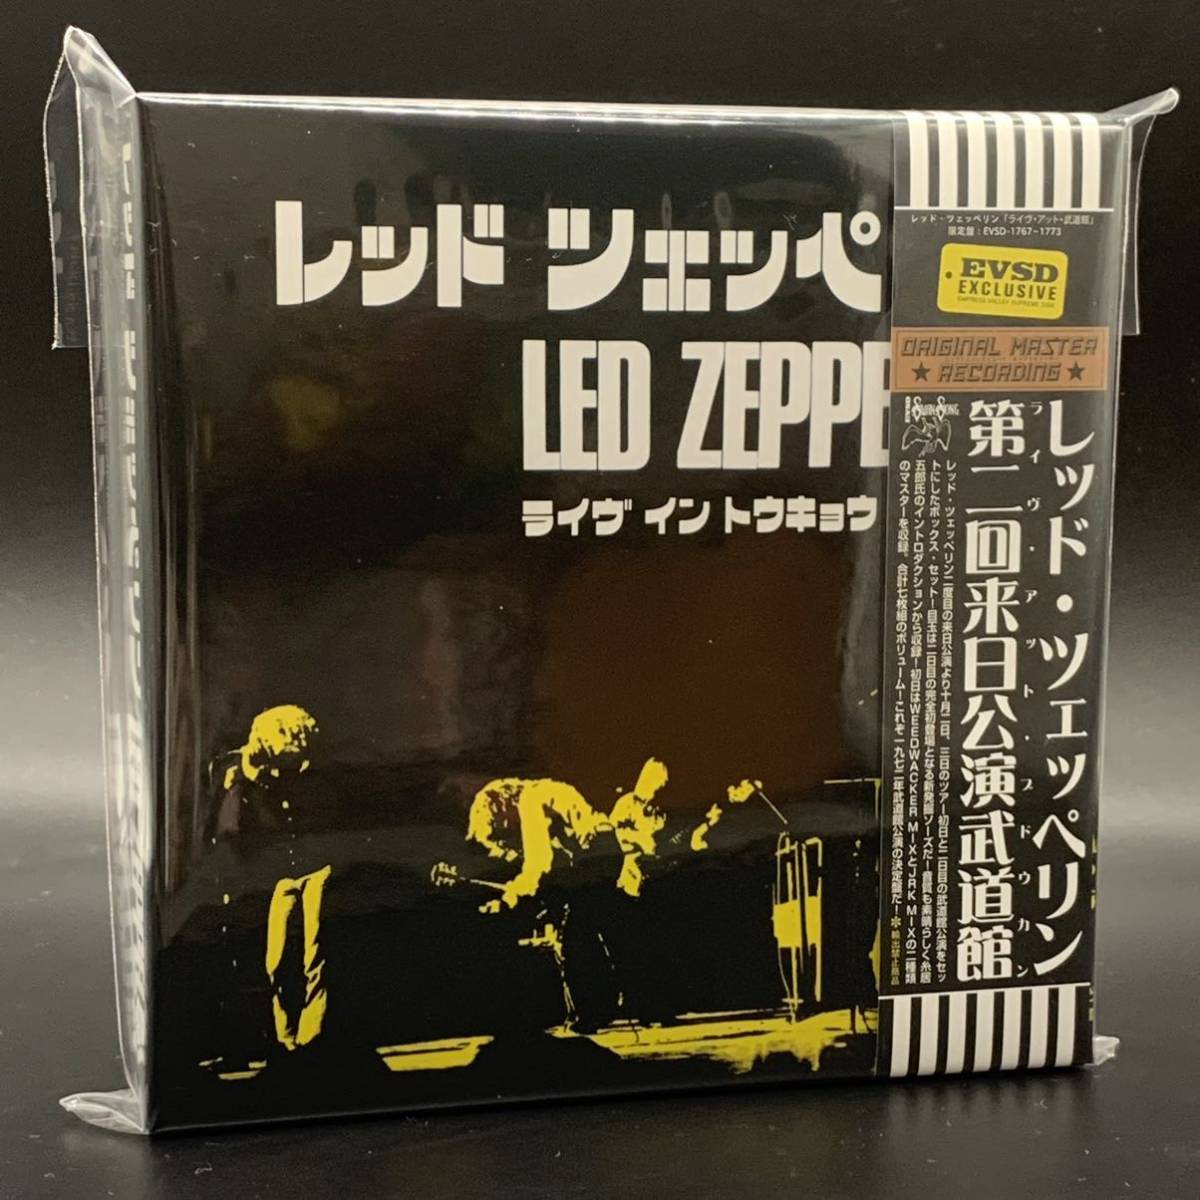 ヤフオク! -「led zeppelin box」(Led Zeppelin) (ハードロック)の落札